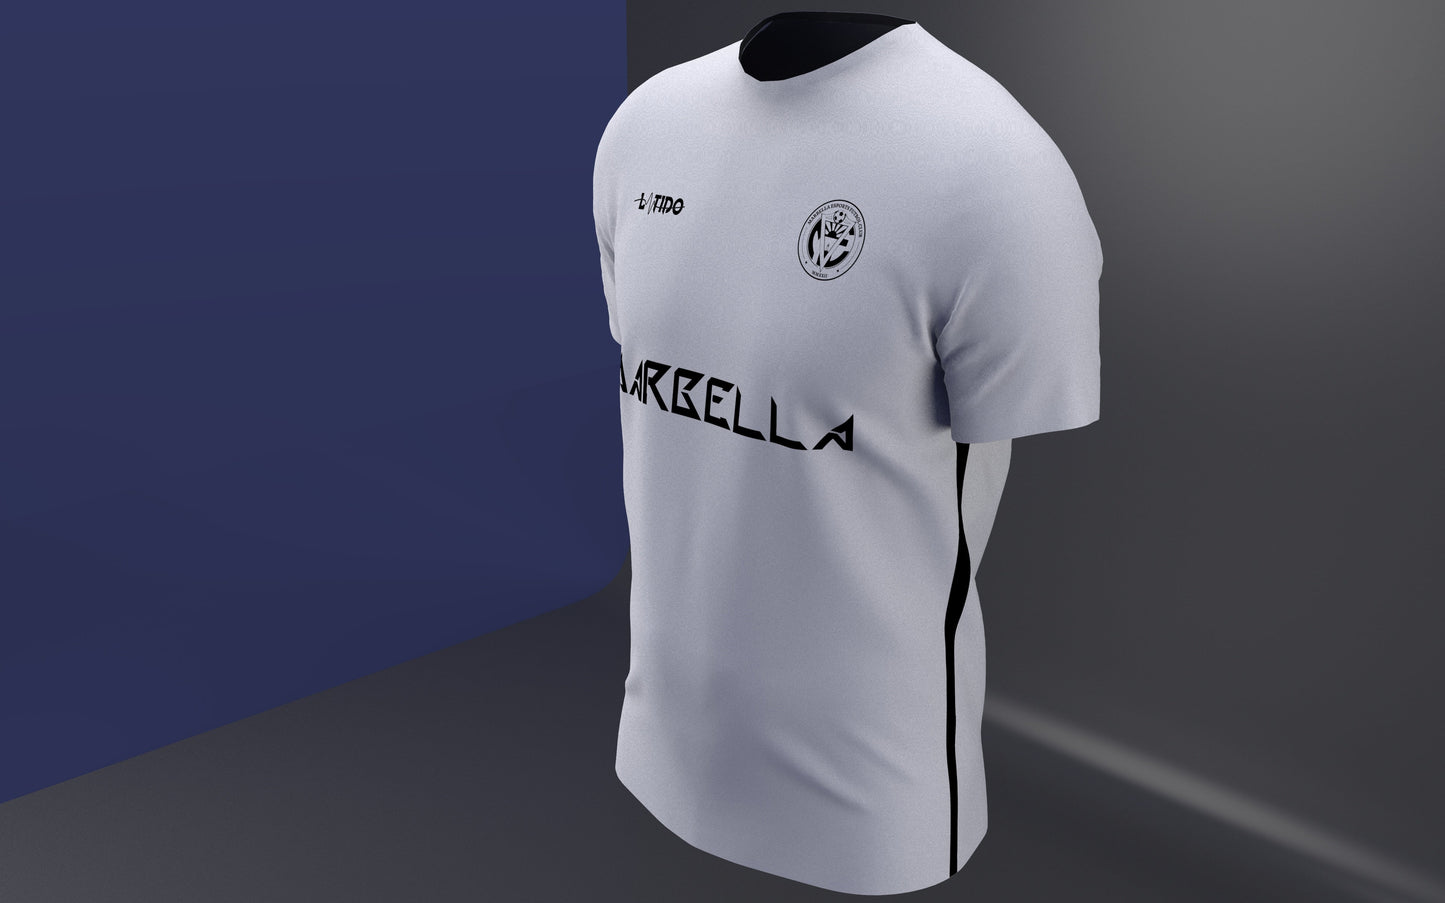 Camiseta de algodón Marbella esports FC blanca